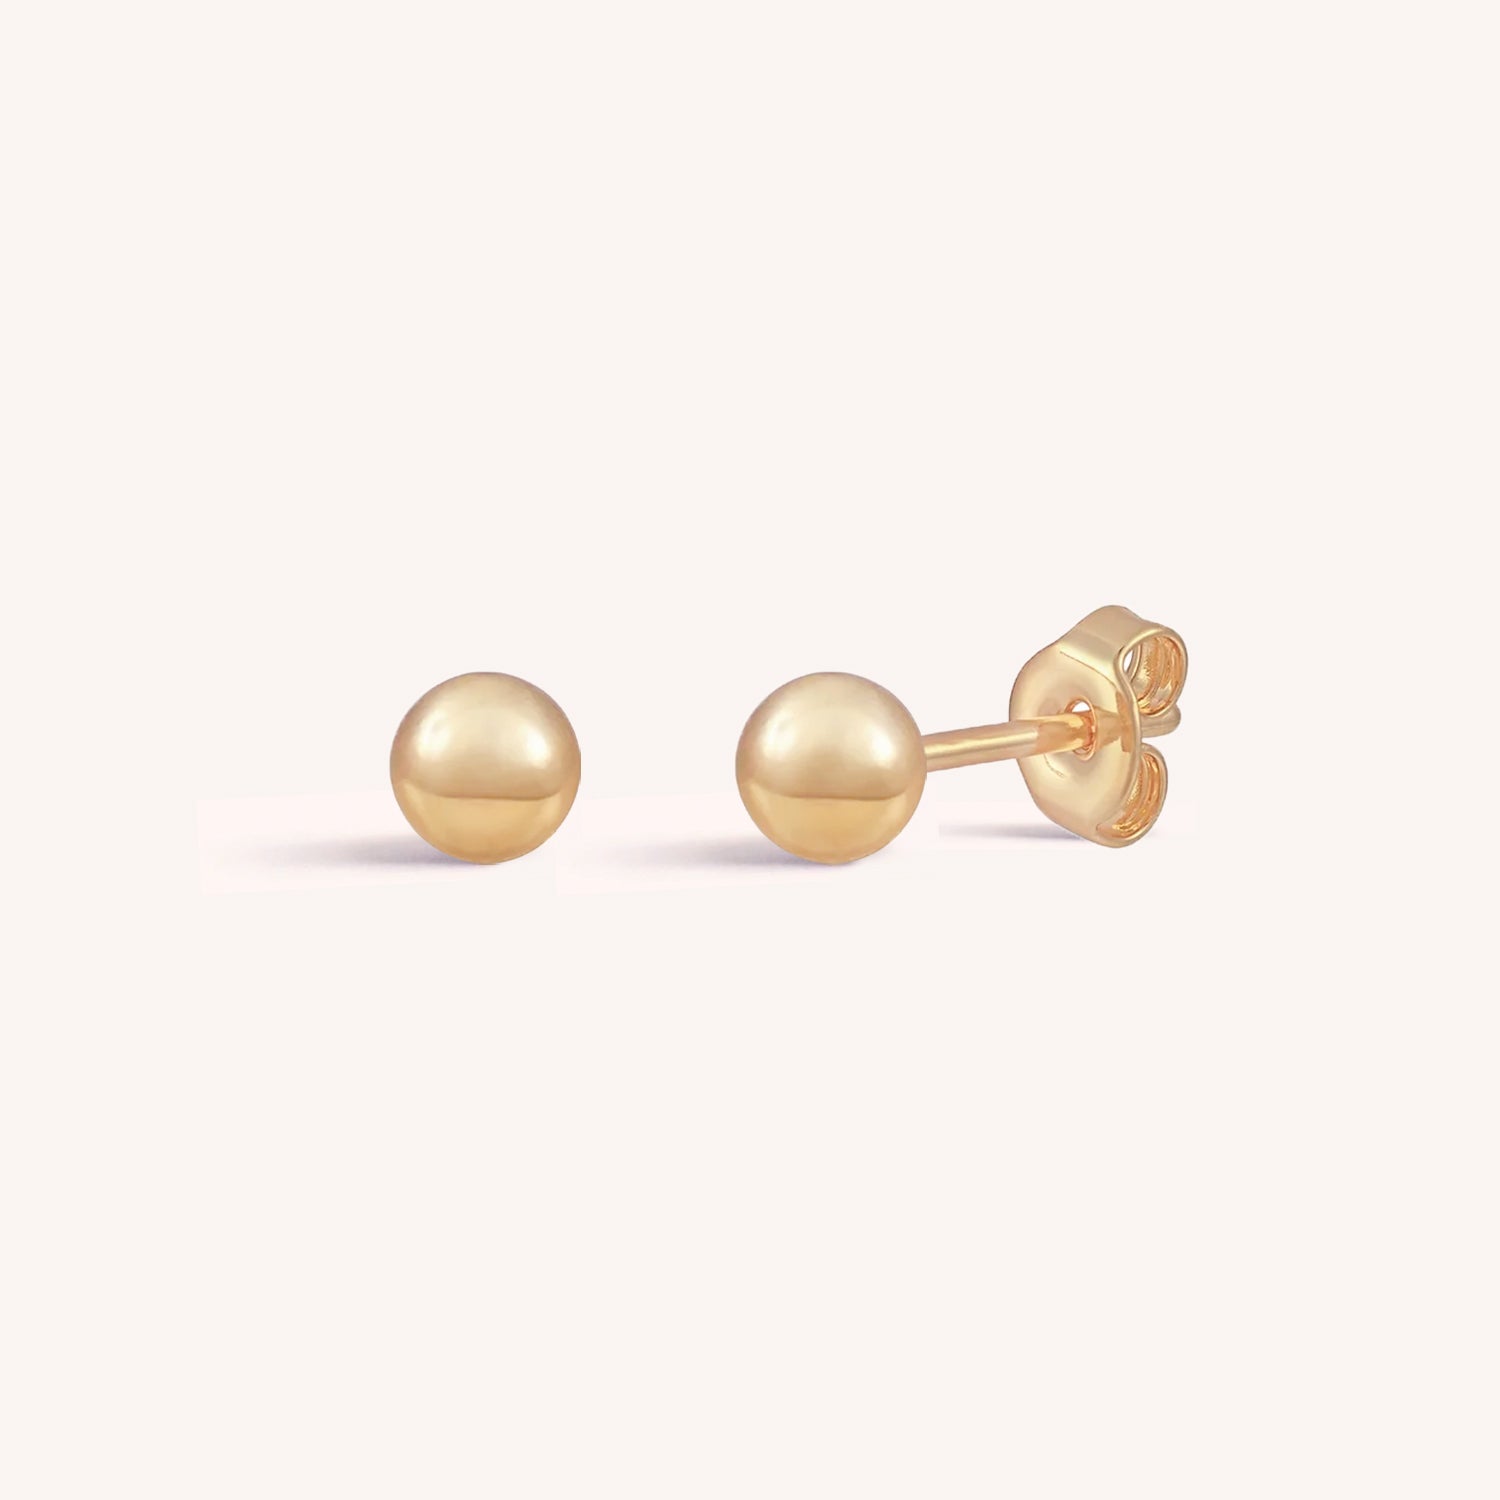 Recycled 14k Gold 4mm Ball Stud Earrings – Gem Set Love